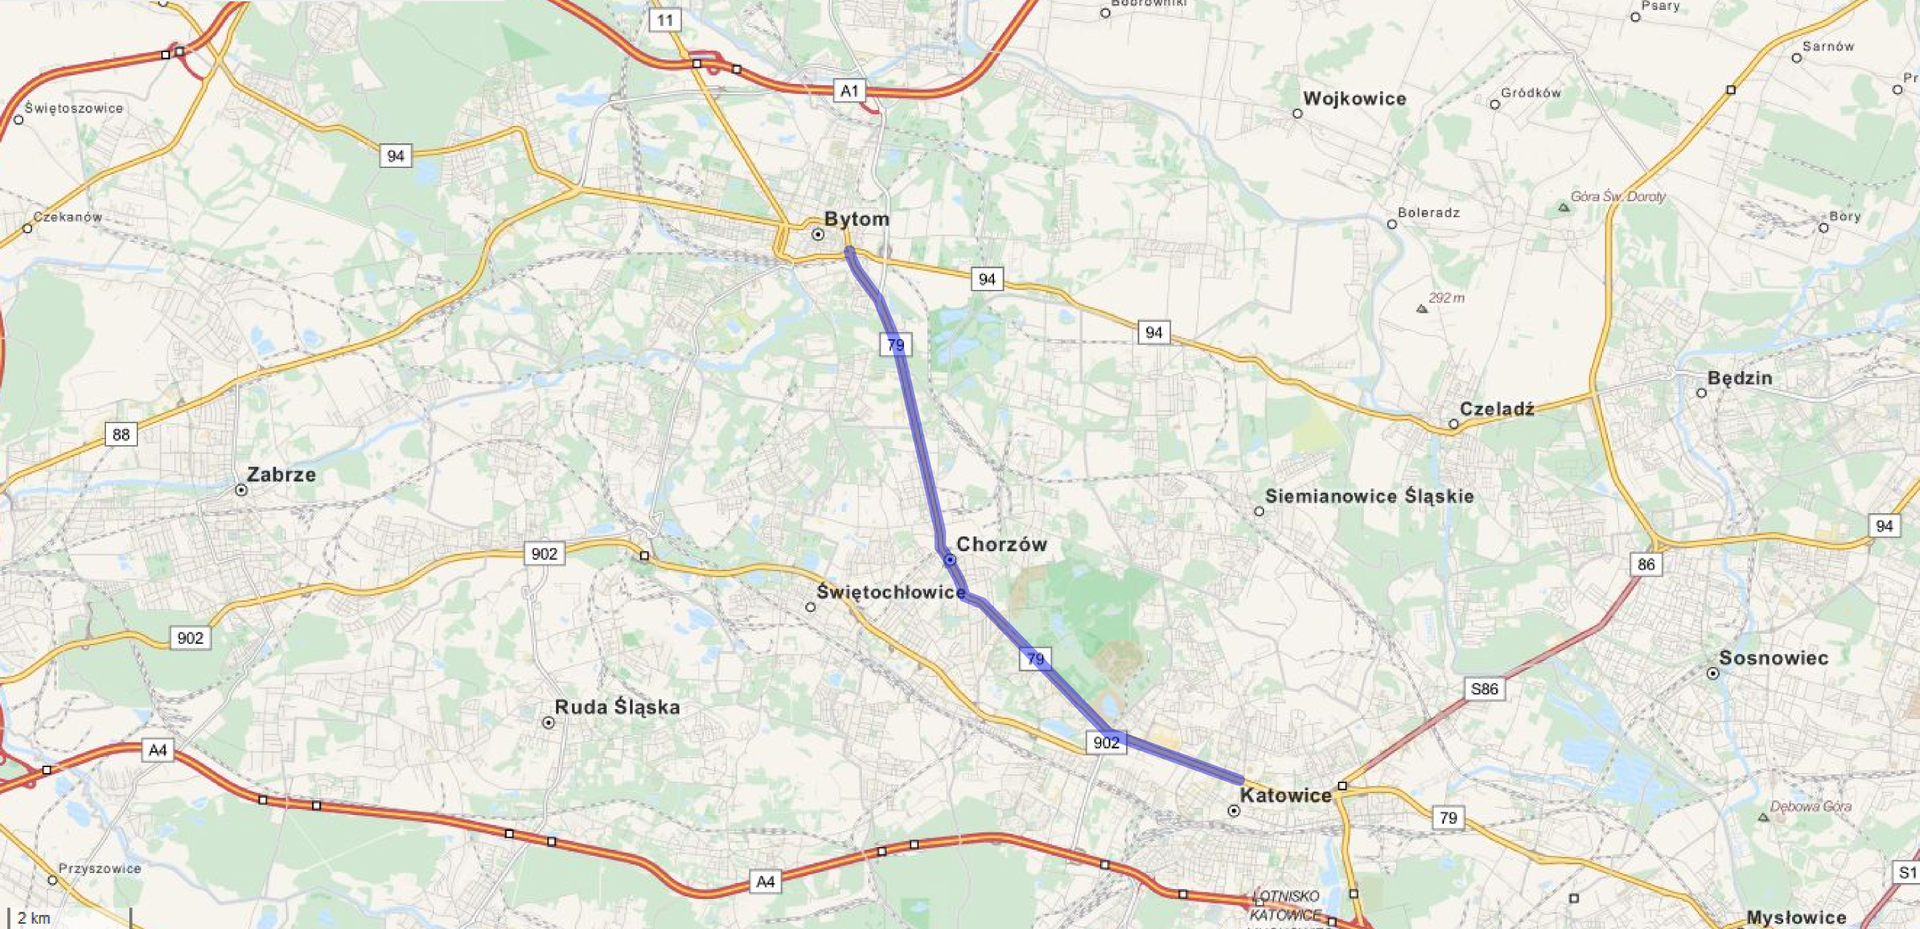 Ilustracja przedstawia fragment mapy Górnego Śląska. Na mapie zaznaczono niebieskim kolorem fragment drogi nr 79, na odcinku między Bytomiem a Katowicami. Droga ta wiedzie przez Chorzów. Katowice są na południowy wschód od Bytomia.